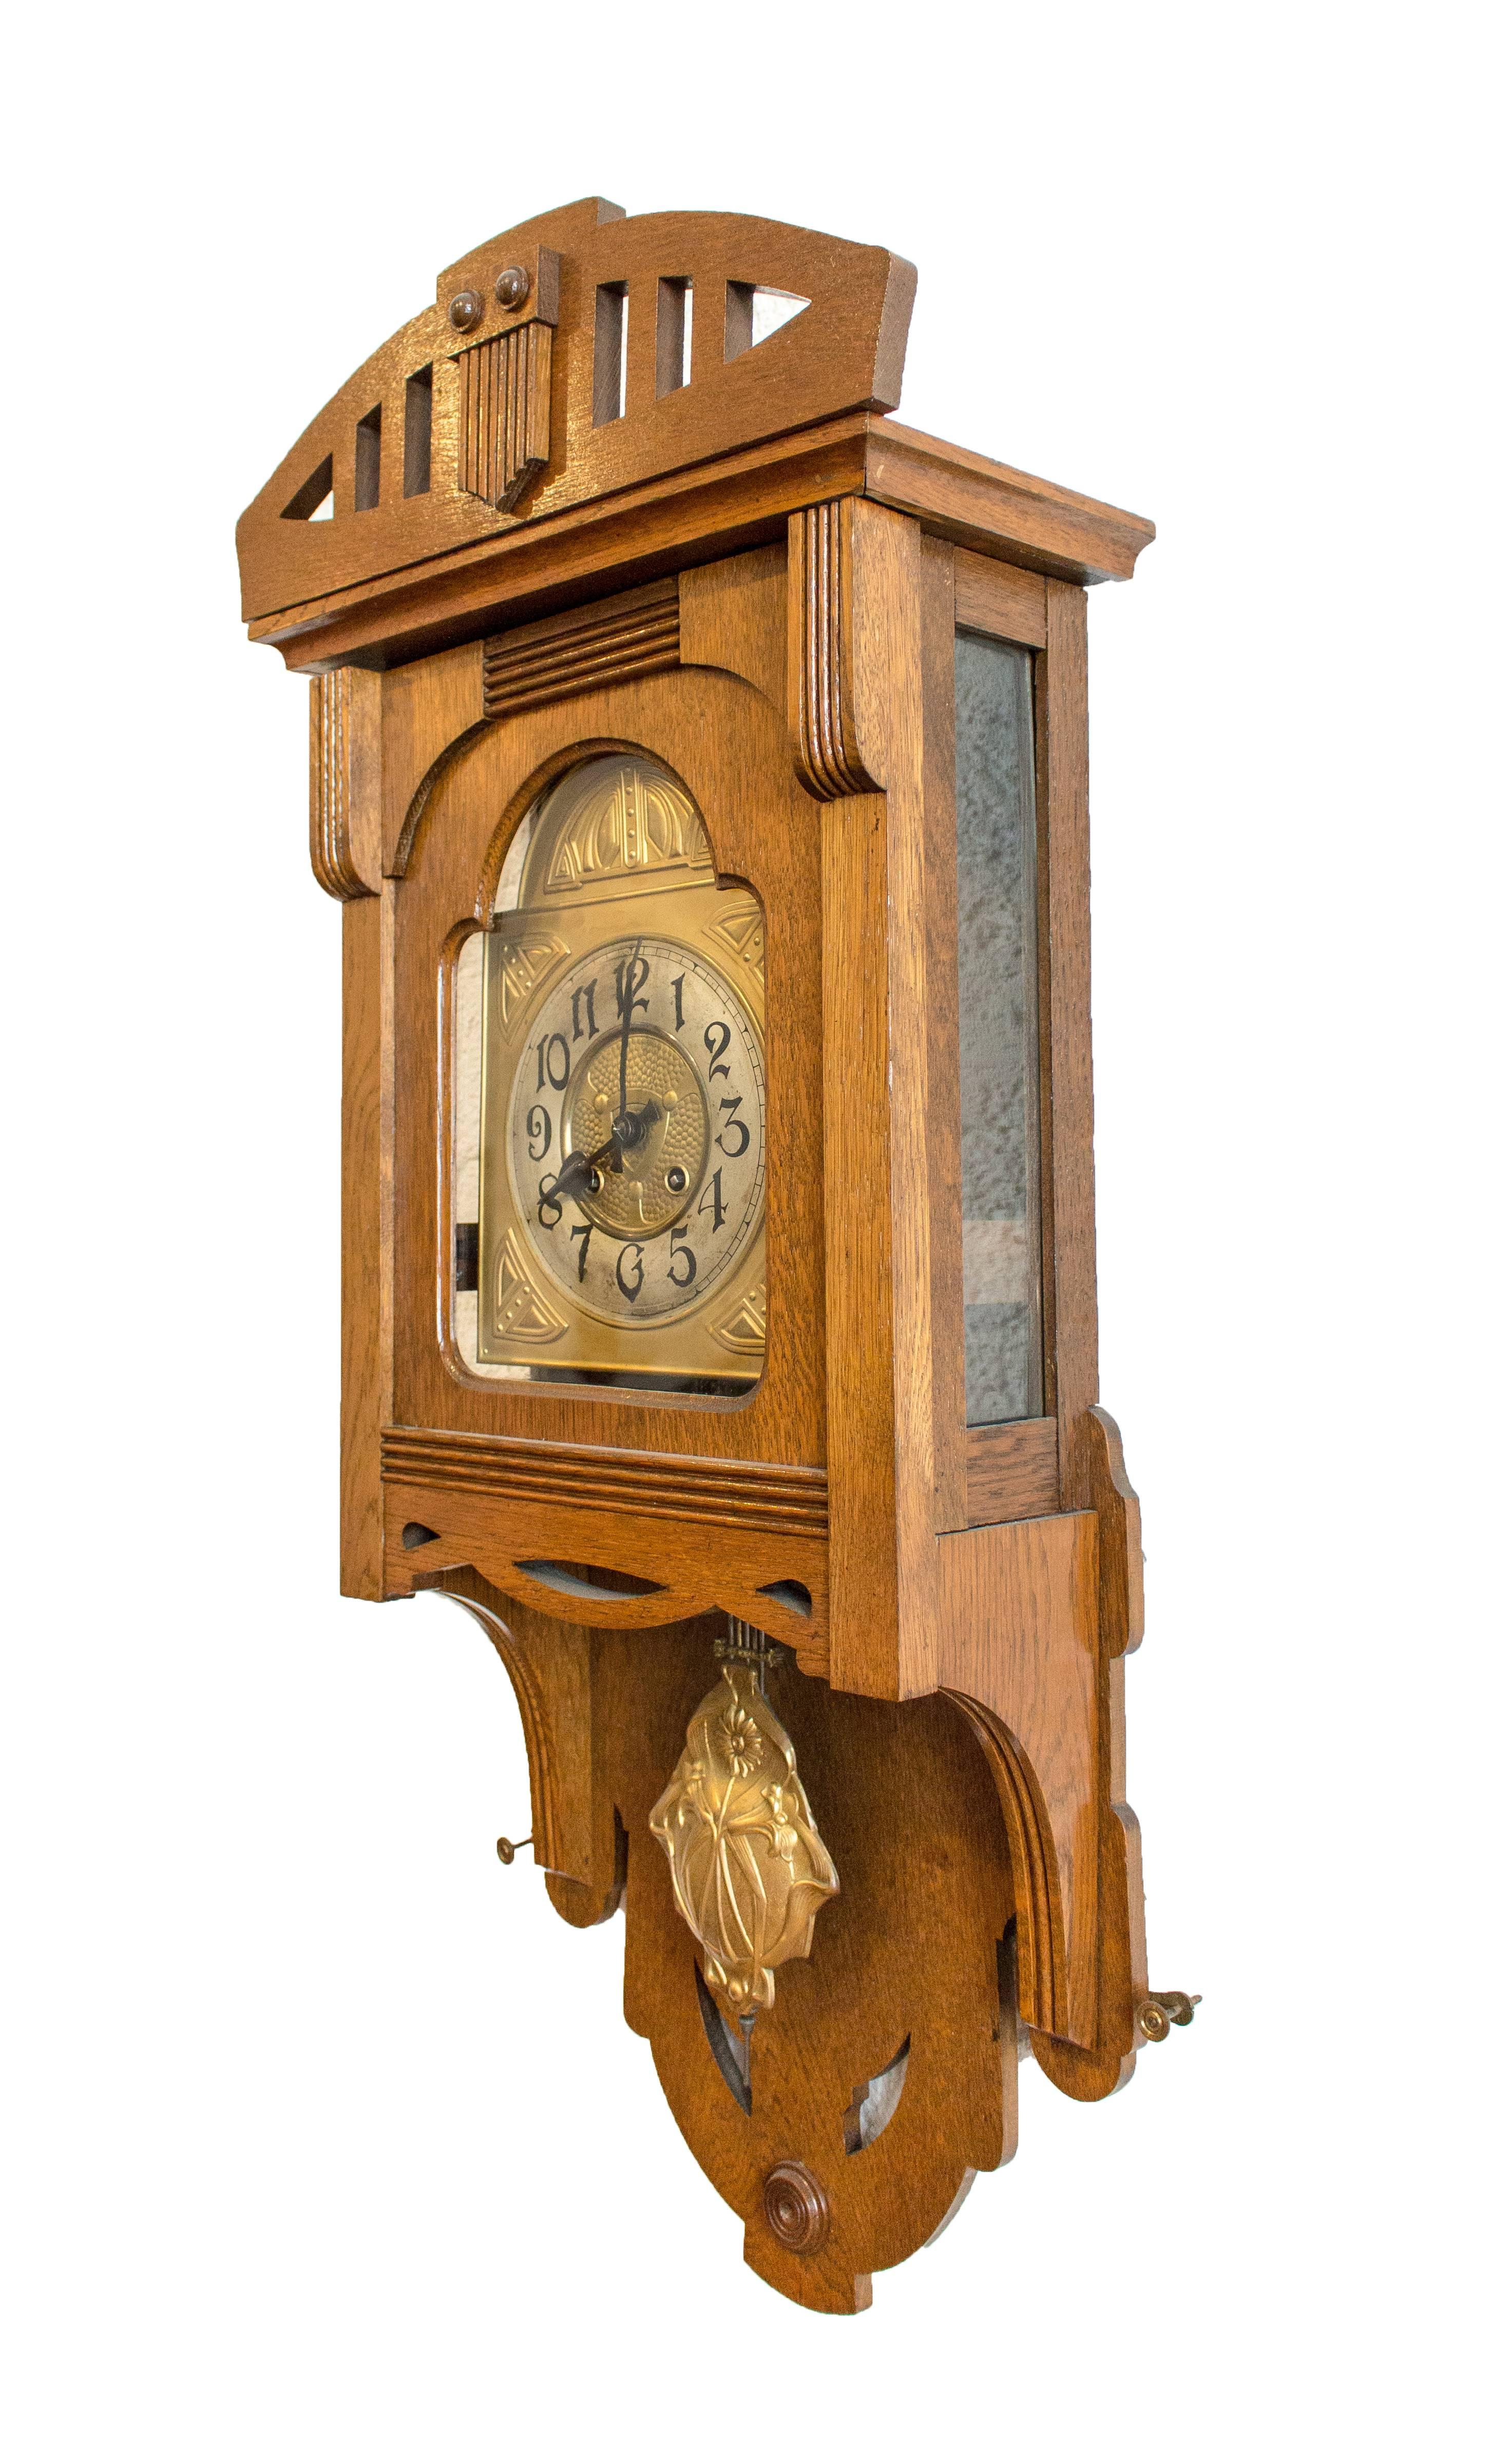 Schöne Jugendstil-Wanduhr aus der Zeit des Jugendstils:: um 1905. Das Uhrengehäuse ist aus Eichenholz:: das Pendel und das Zifferblatt sind aus Messing gefertigt. 
Die Uhr ist sehr gut restauriert und wurde von einem Uhrmachermeister überholt.